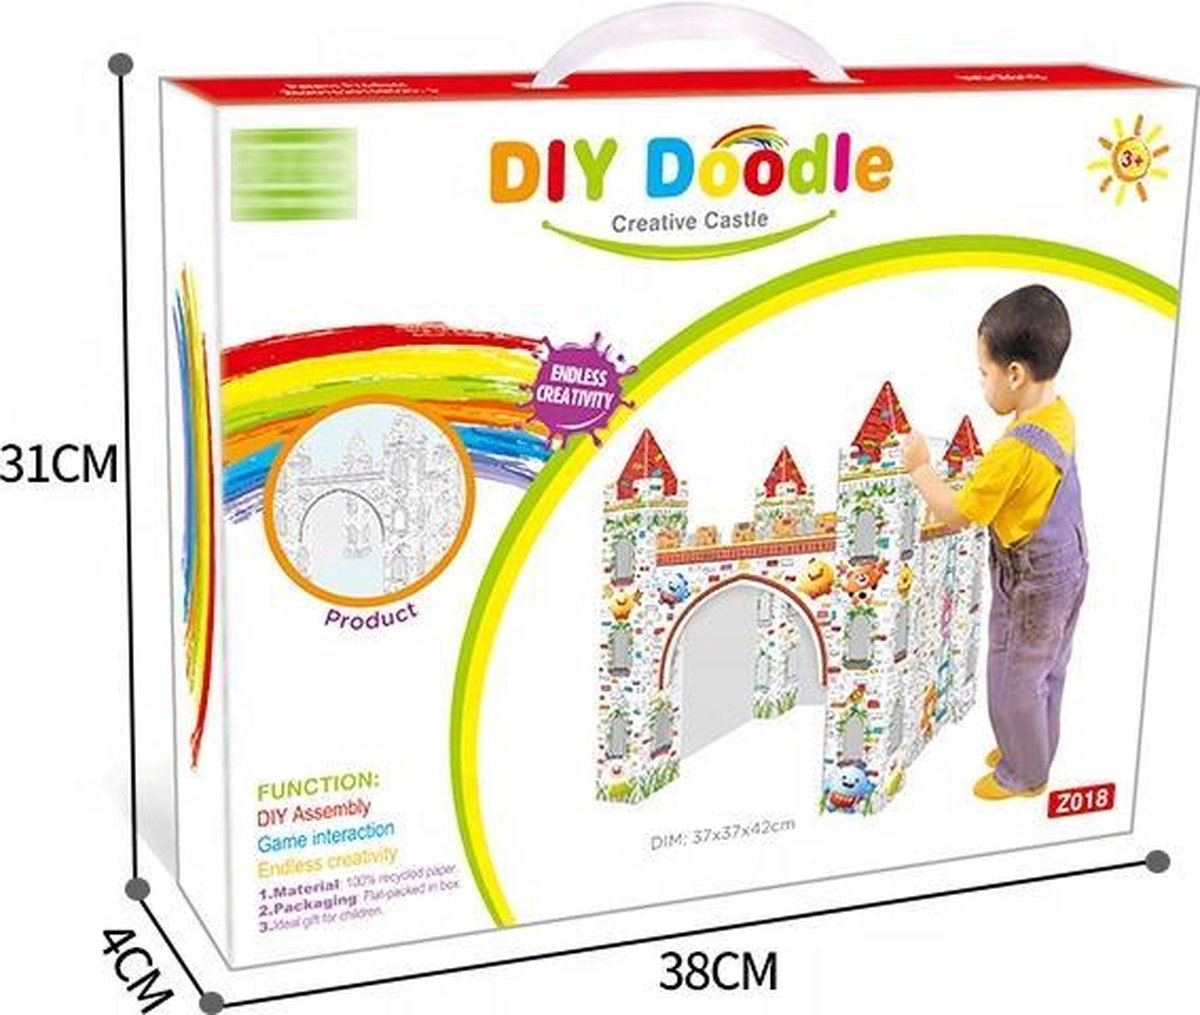 Inkleurbaar Speelhuis van Duurzaam Karton - 3D Kleurplaat - Speelkasteel - Tekenkasteel - Kartonnen Speelhuis - Speelhuisje voor binnen - Voor kinderen vanaf 3 jaar - Kleurplaat - DIY Doodle